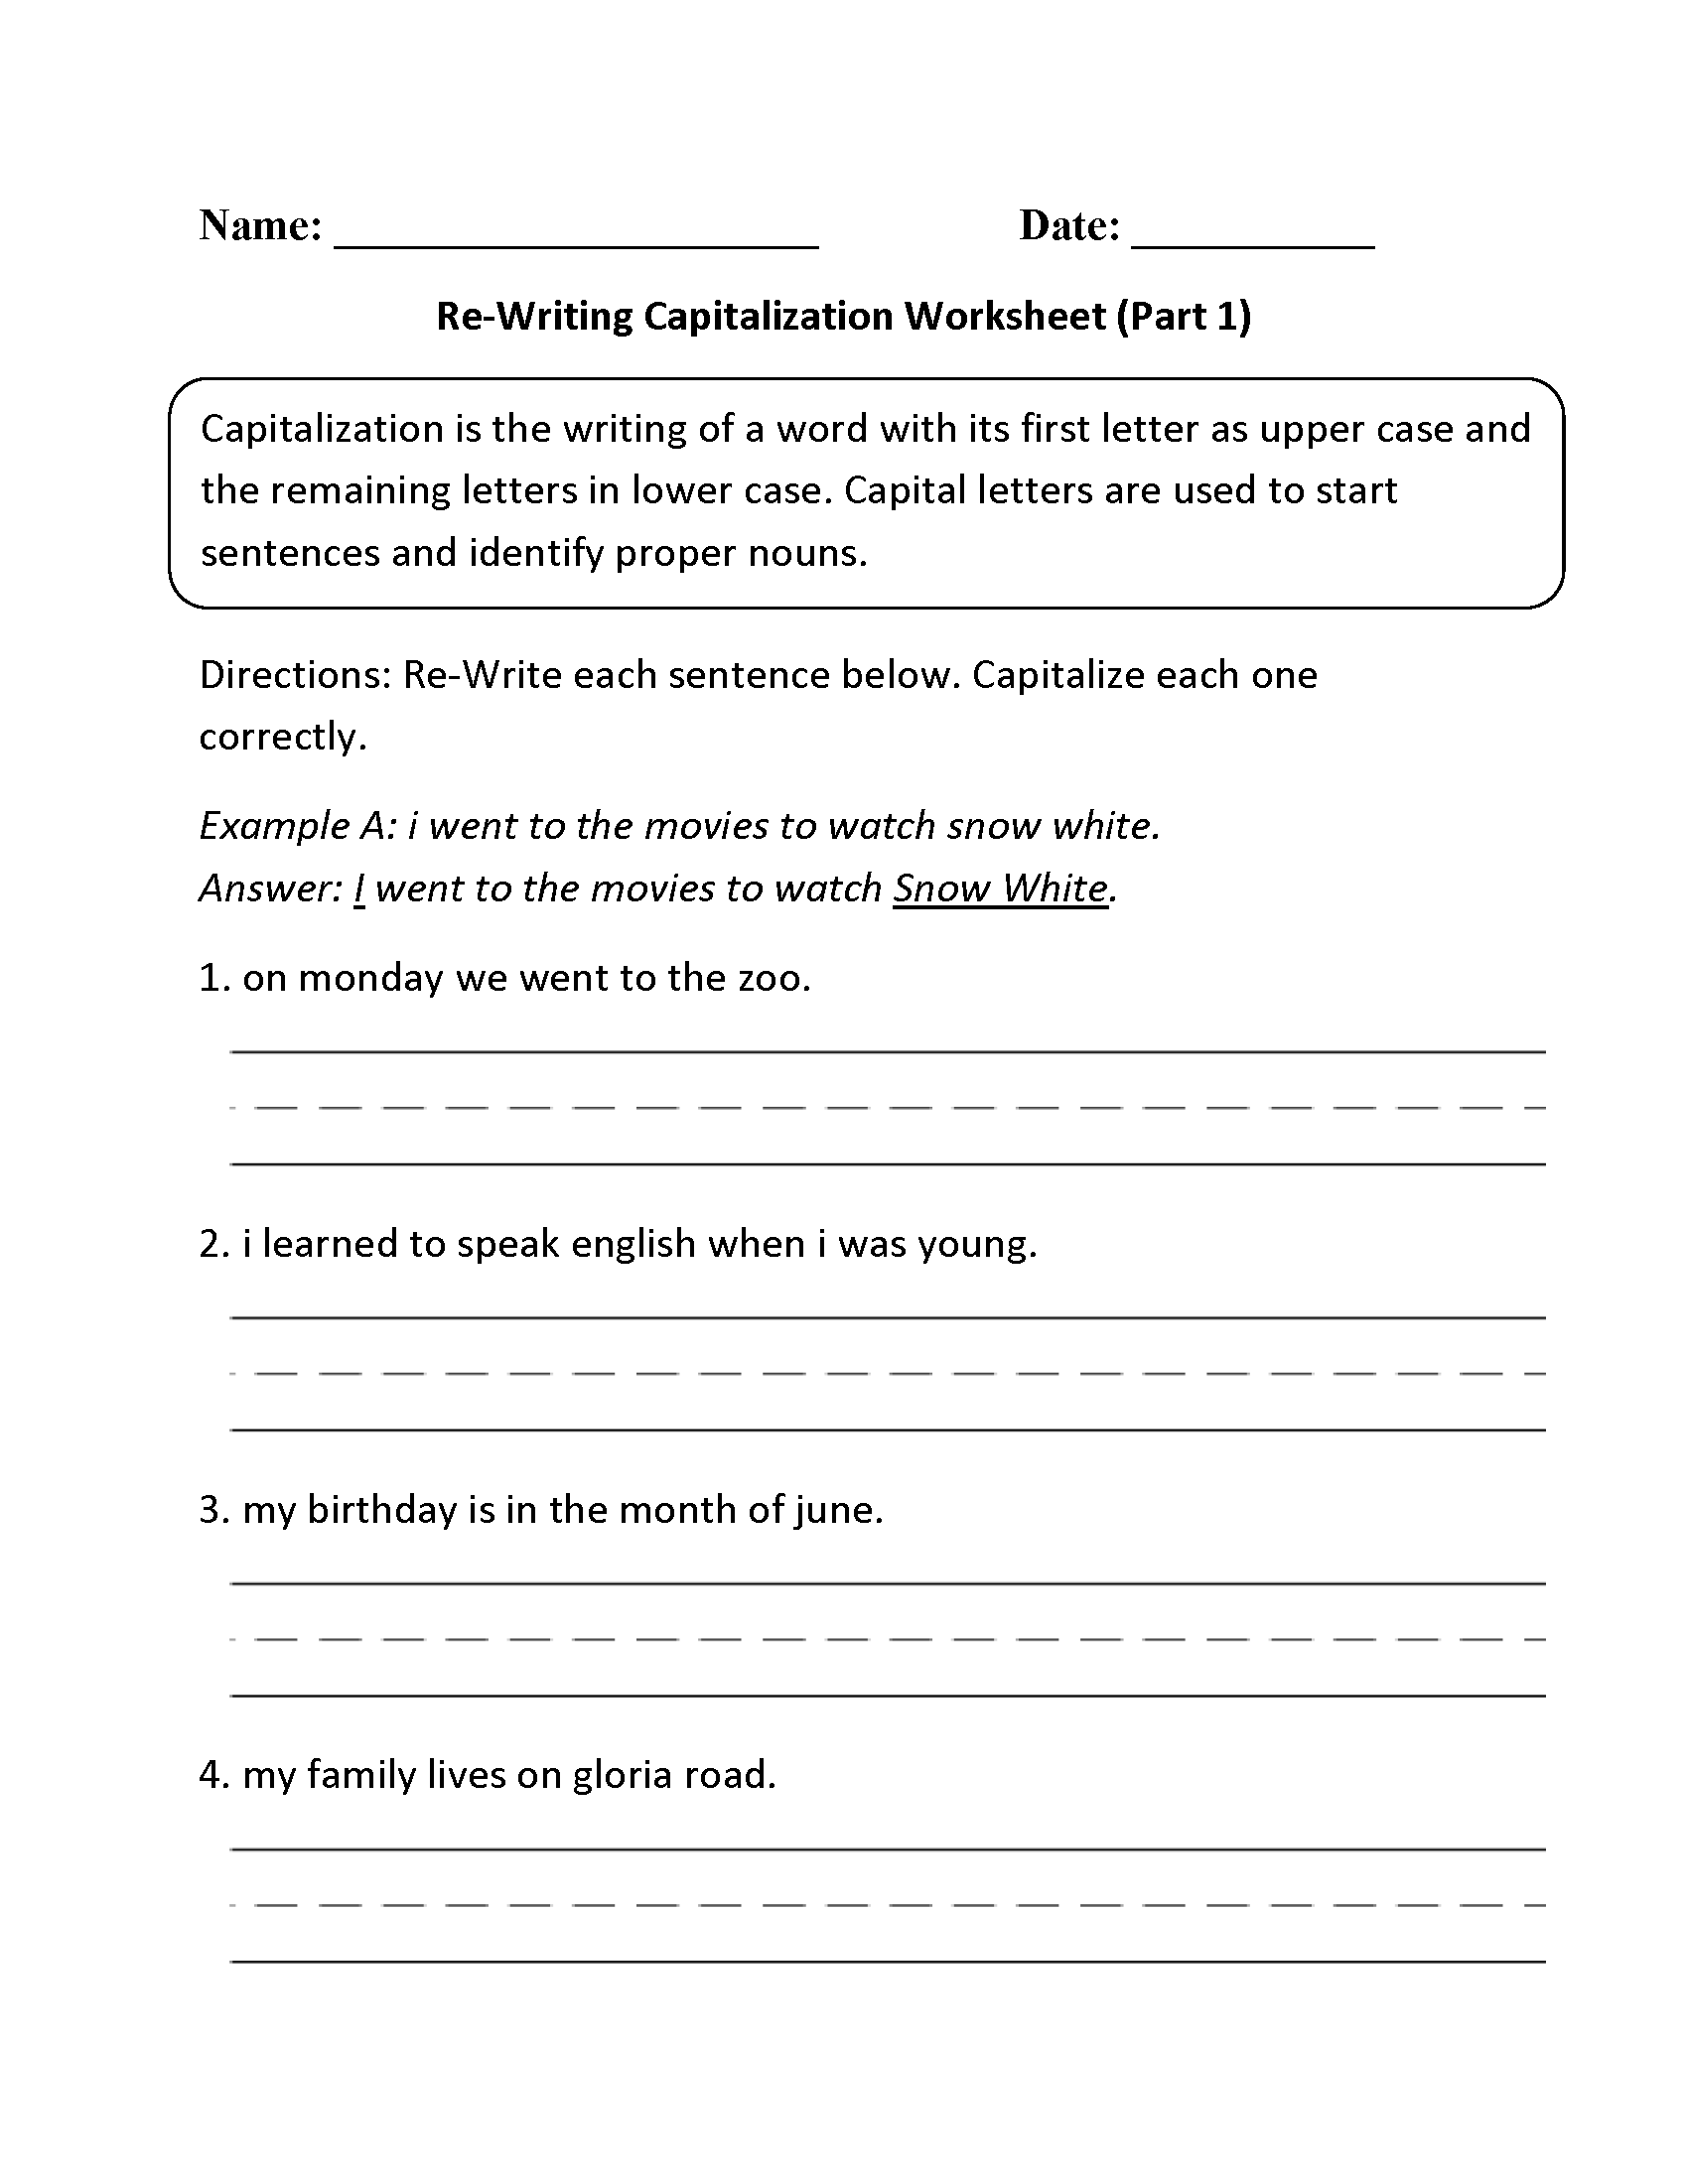 capitalization-worksheets-for-grade-1-worksheets-for-kindergarten